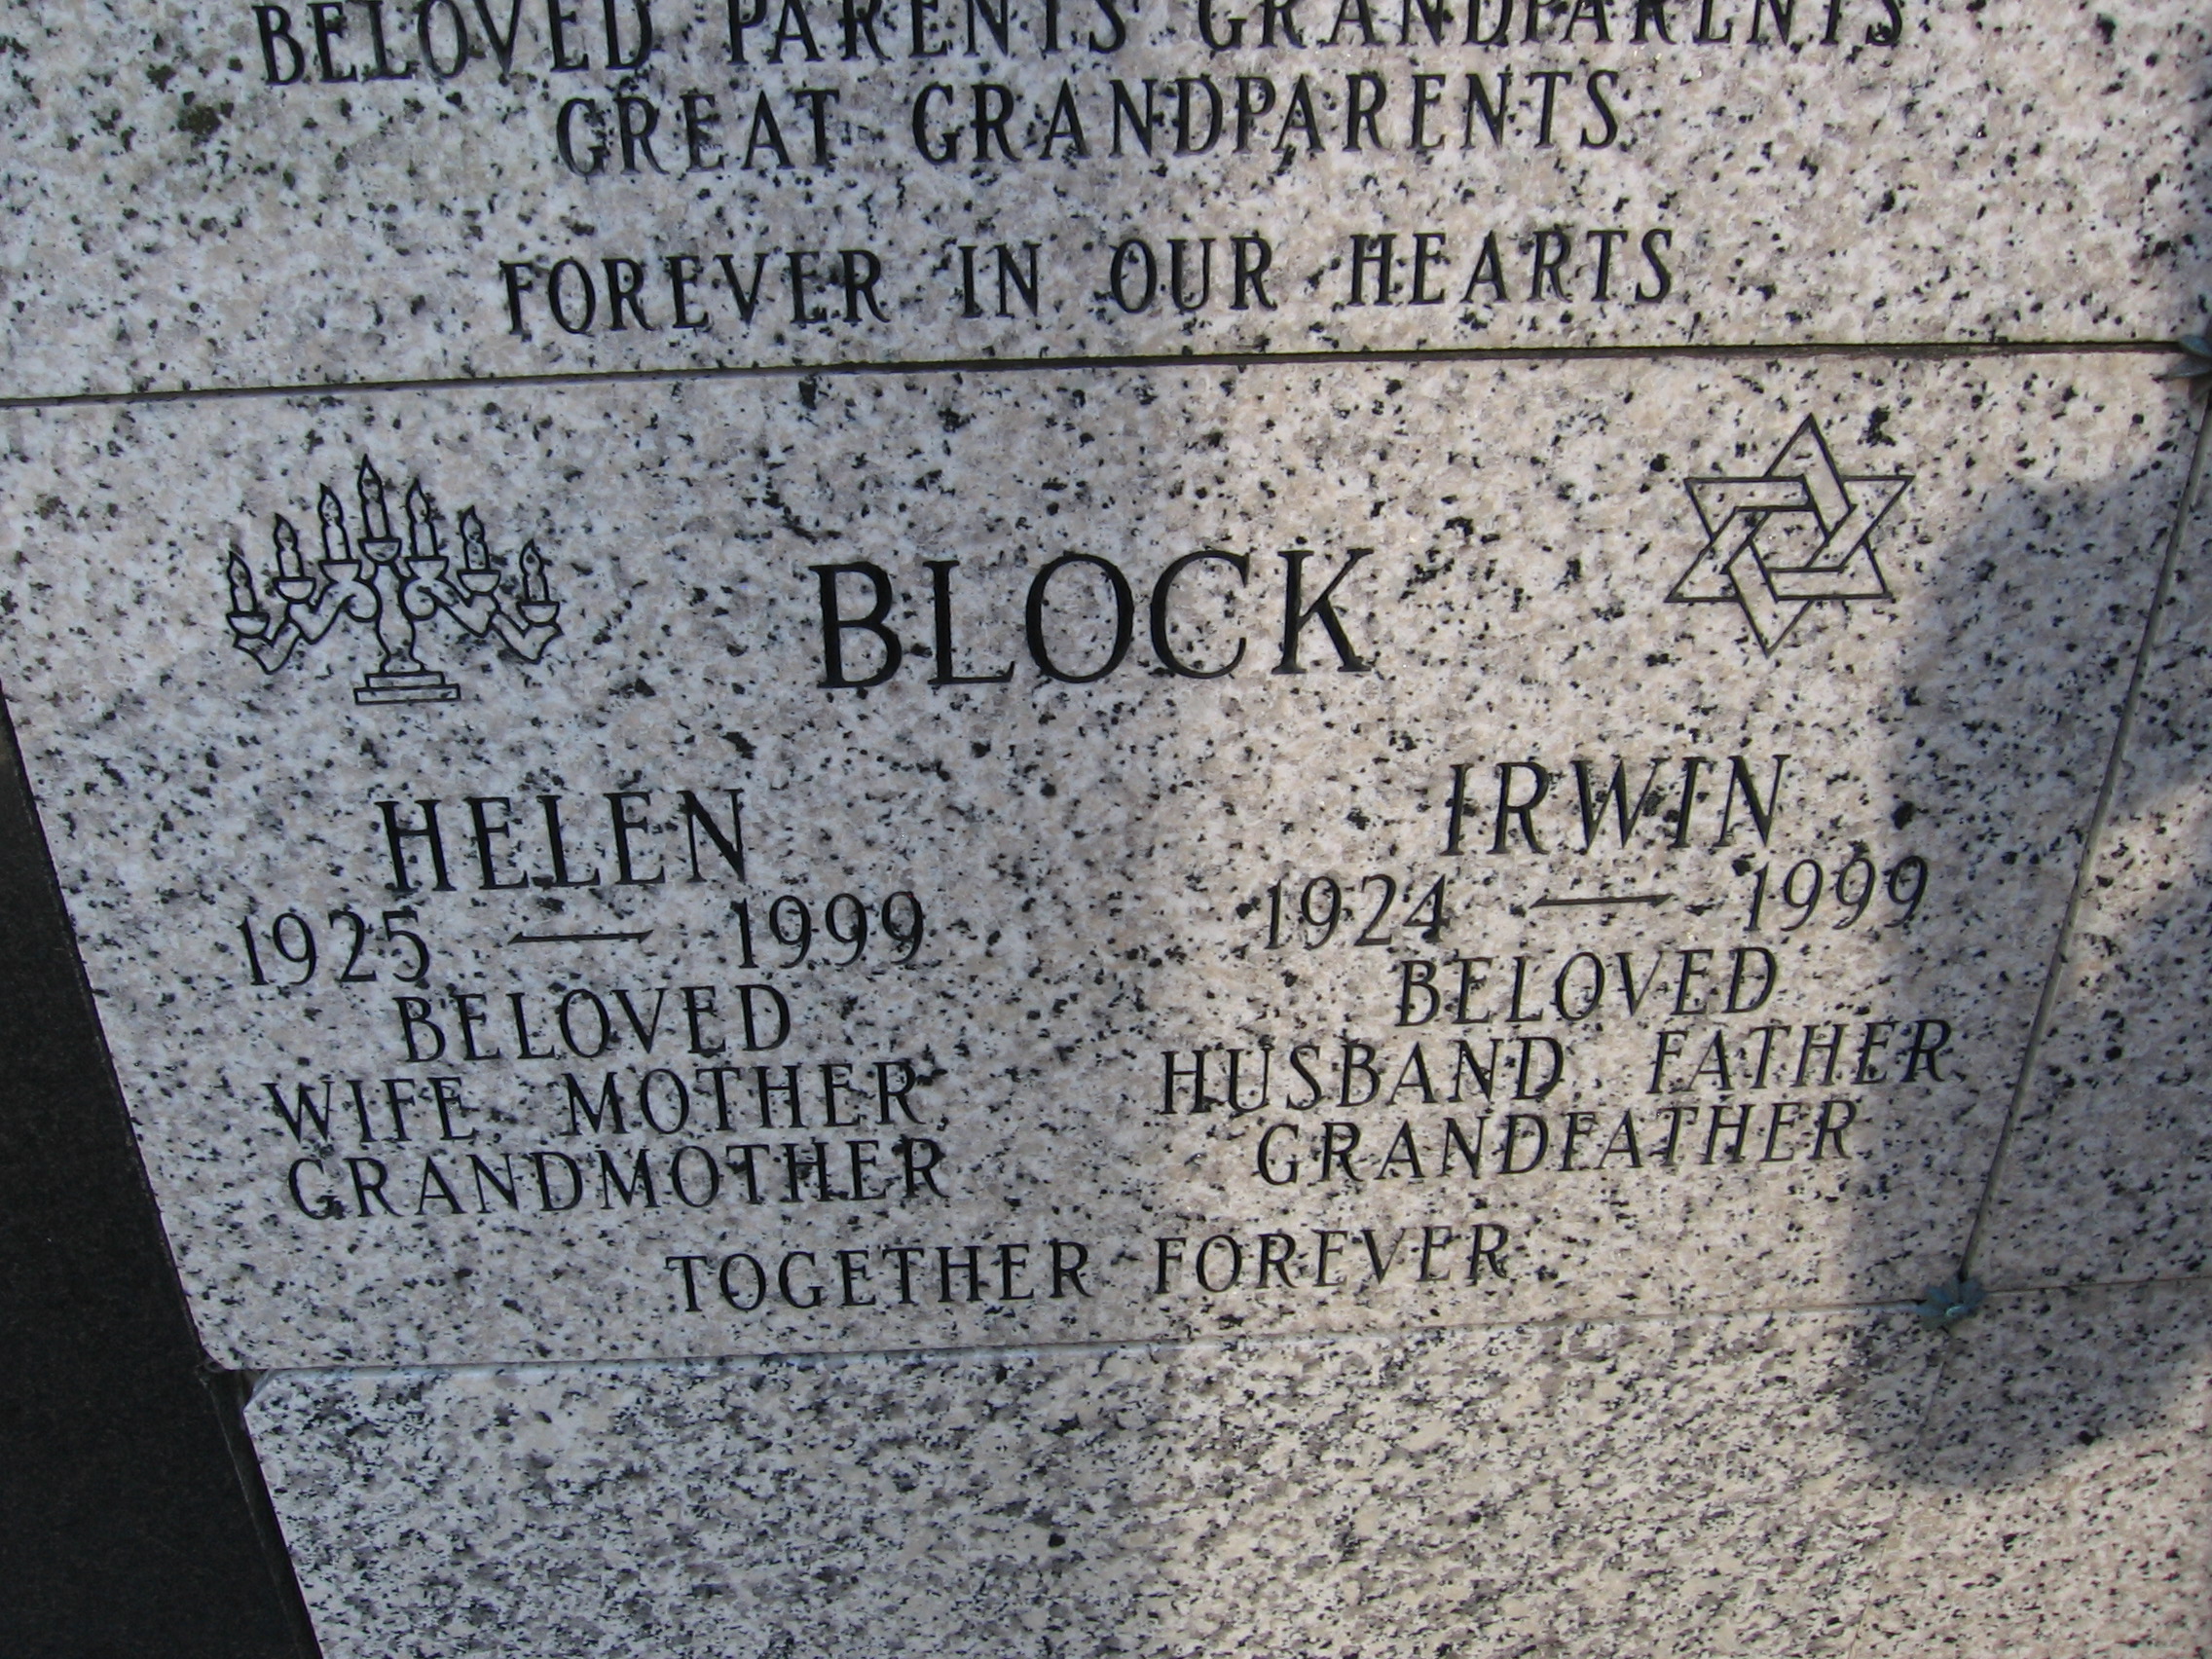 Helen Block